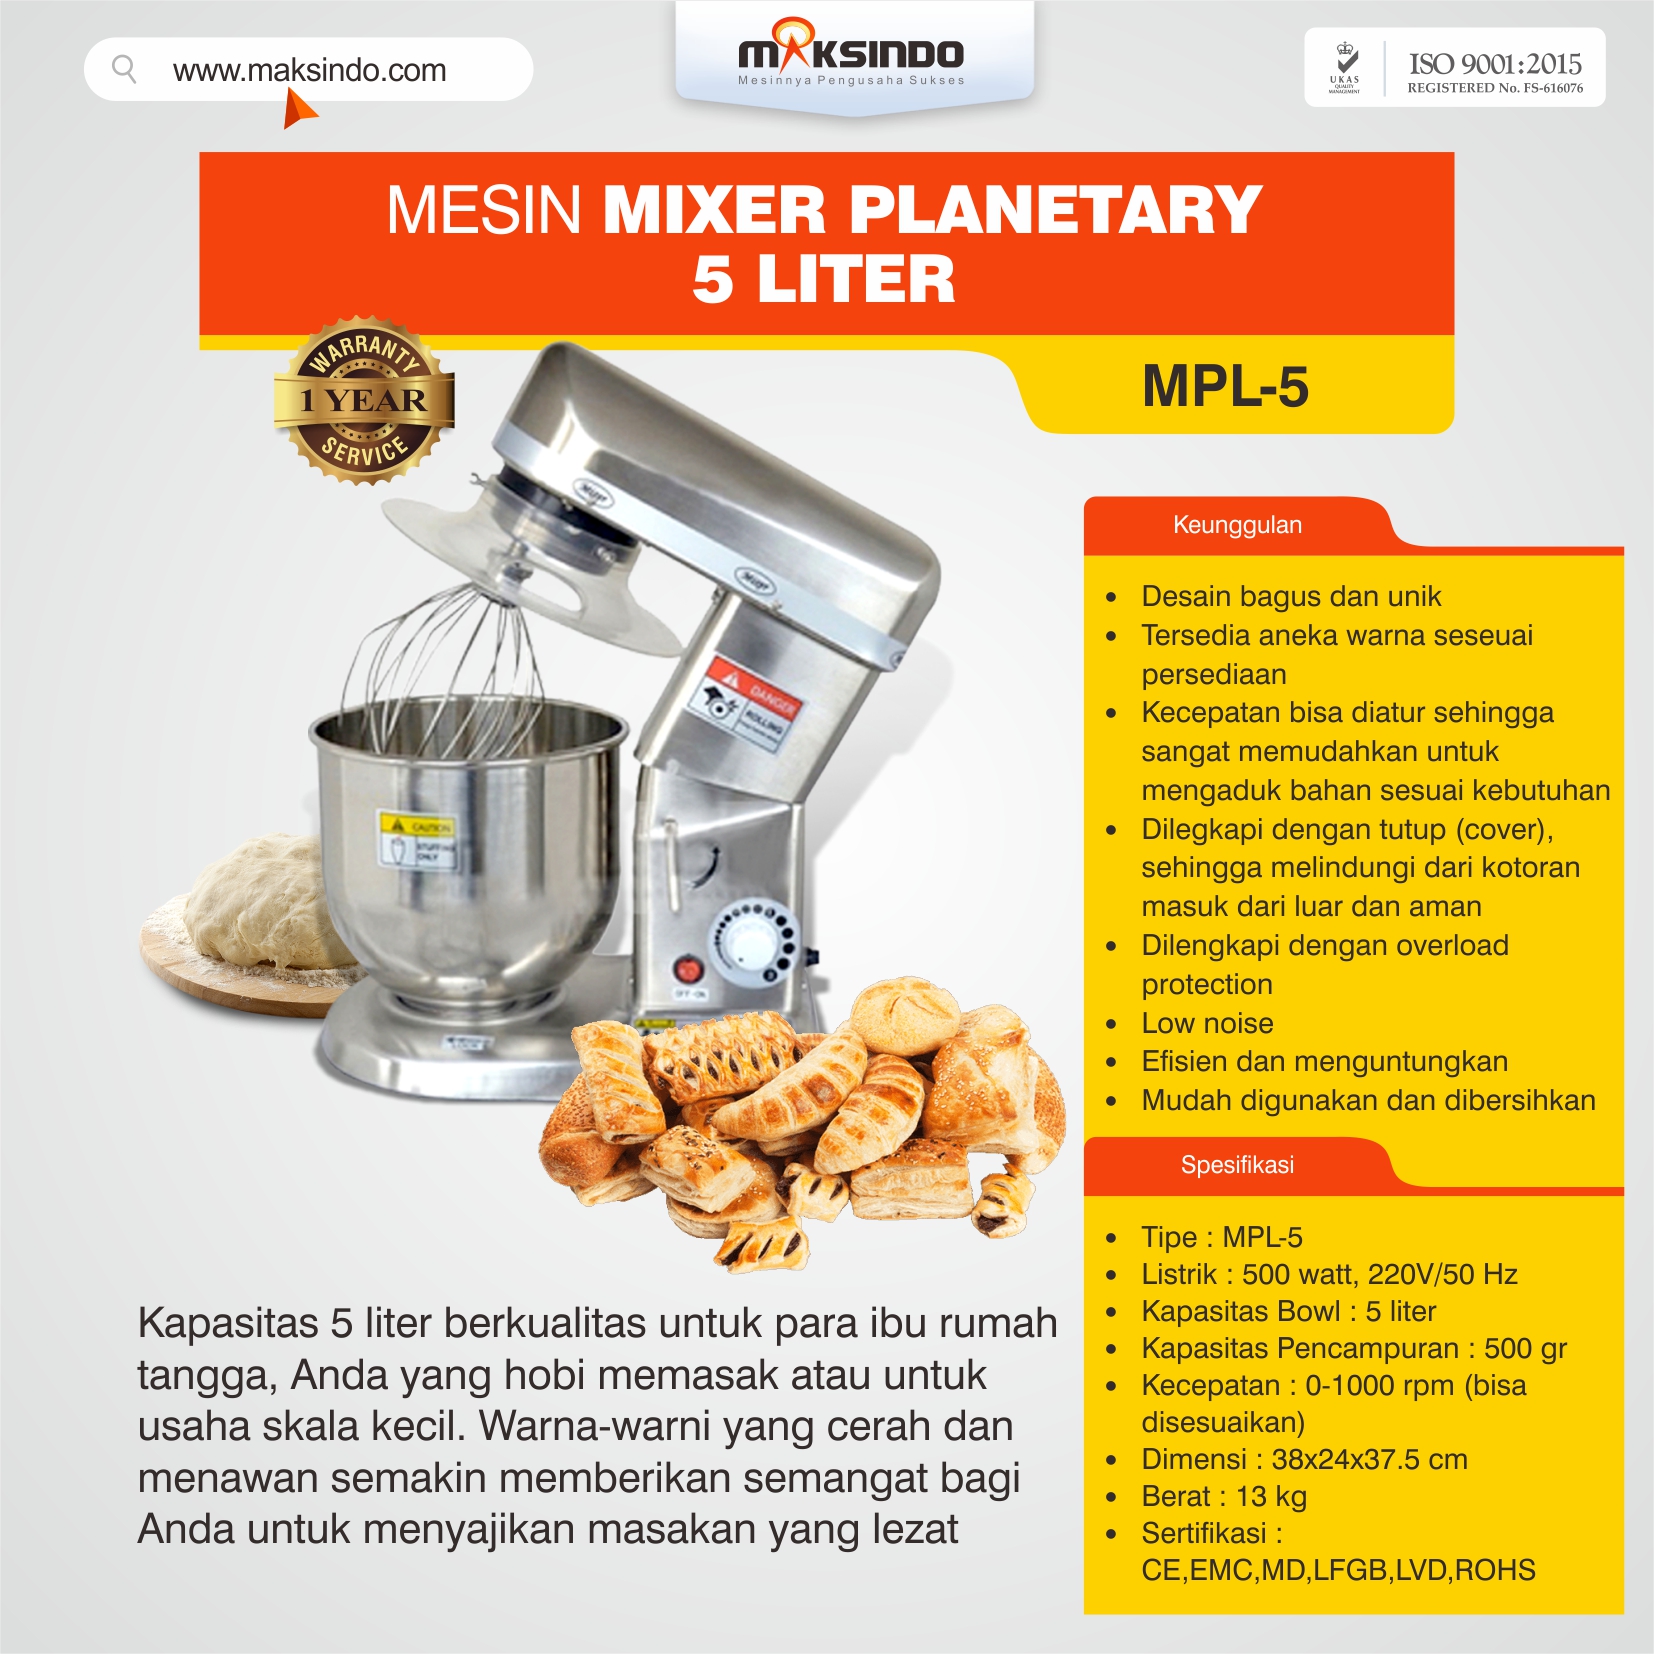 Jual Mesin Mixer Planetary 5 Liter (MPL-5) di Semarang